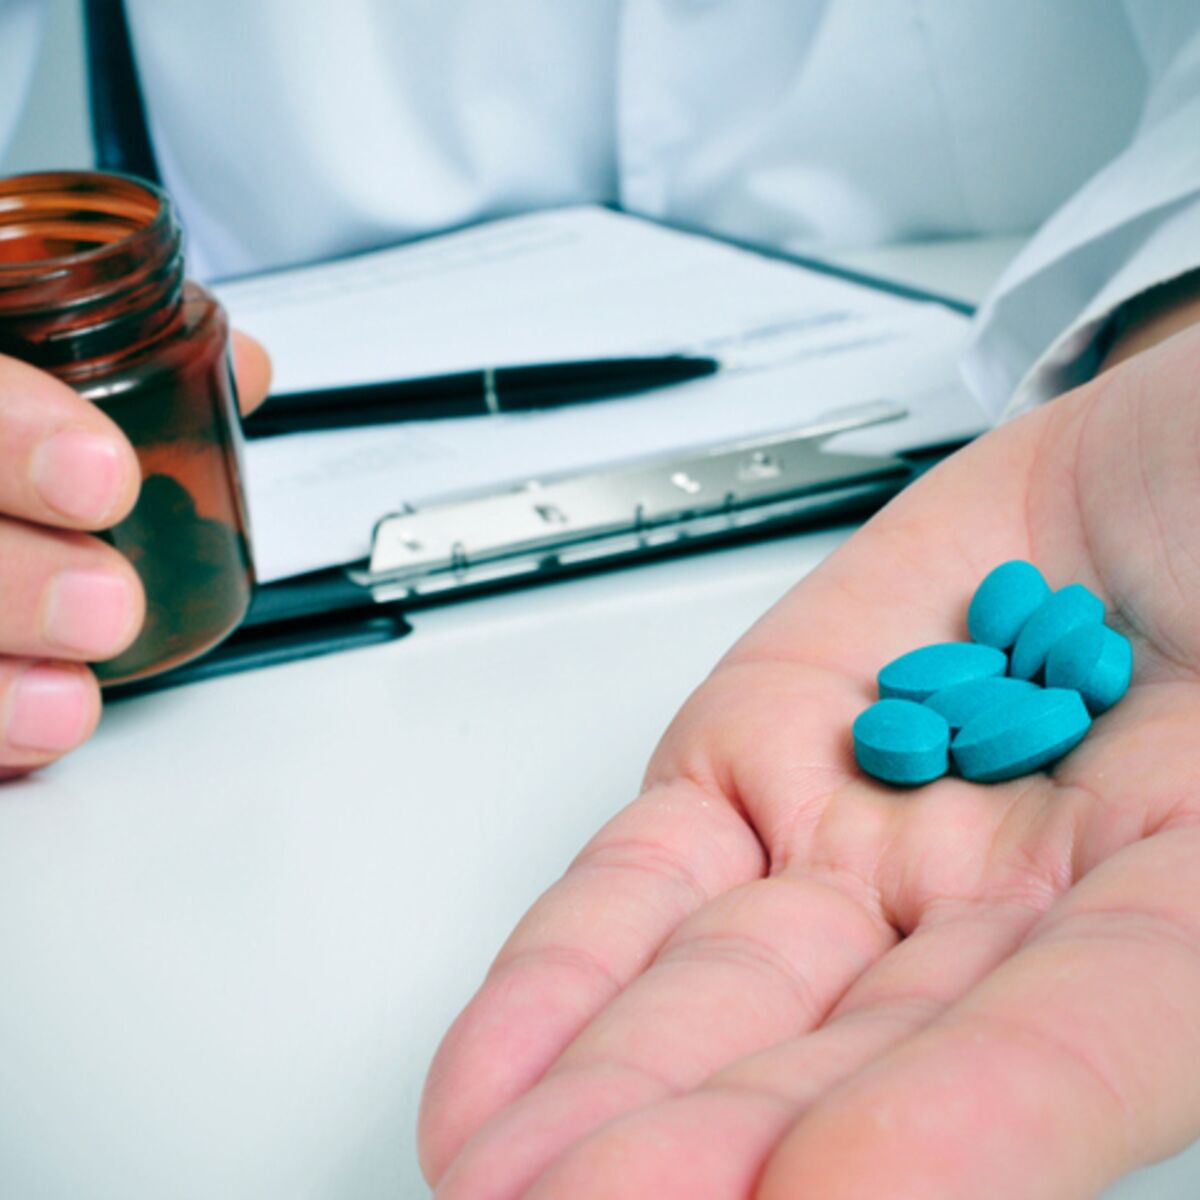 Une révolution sexuelle: 20 ans du Viagra: le gros succès de la petite  pilule bleue